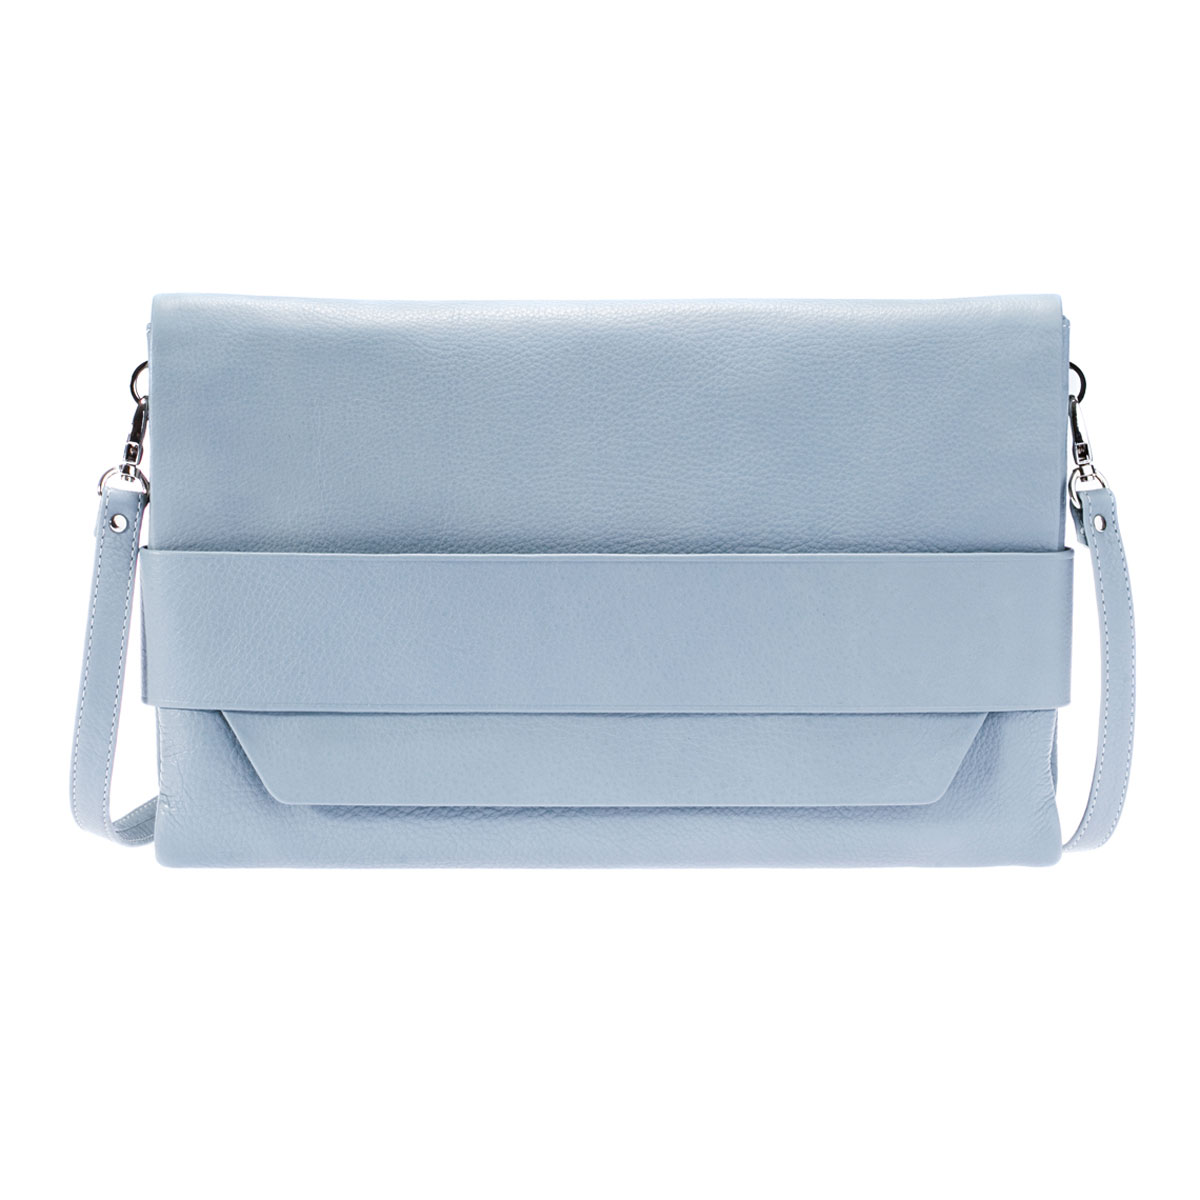 Сумка женская "Askent", цвет: голубой. S.46.NL - купить фирменную сумку женскую по доступной цене с доставкой на дом в интернет магазине OZON.ru